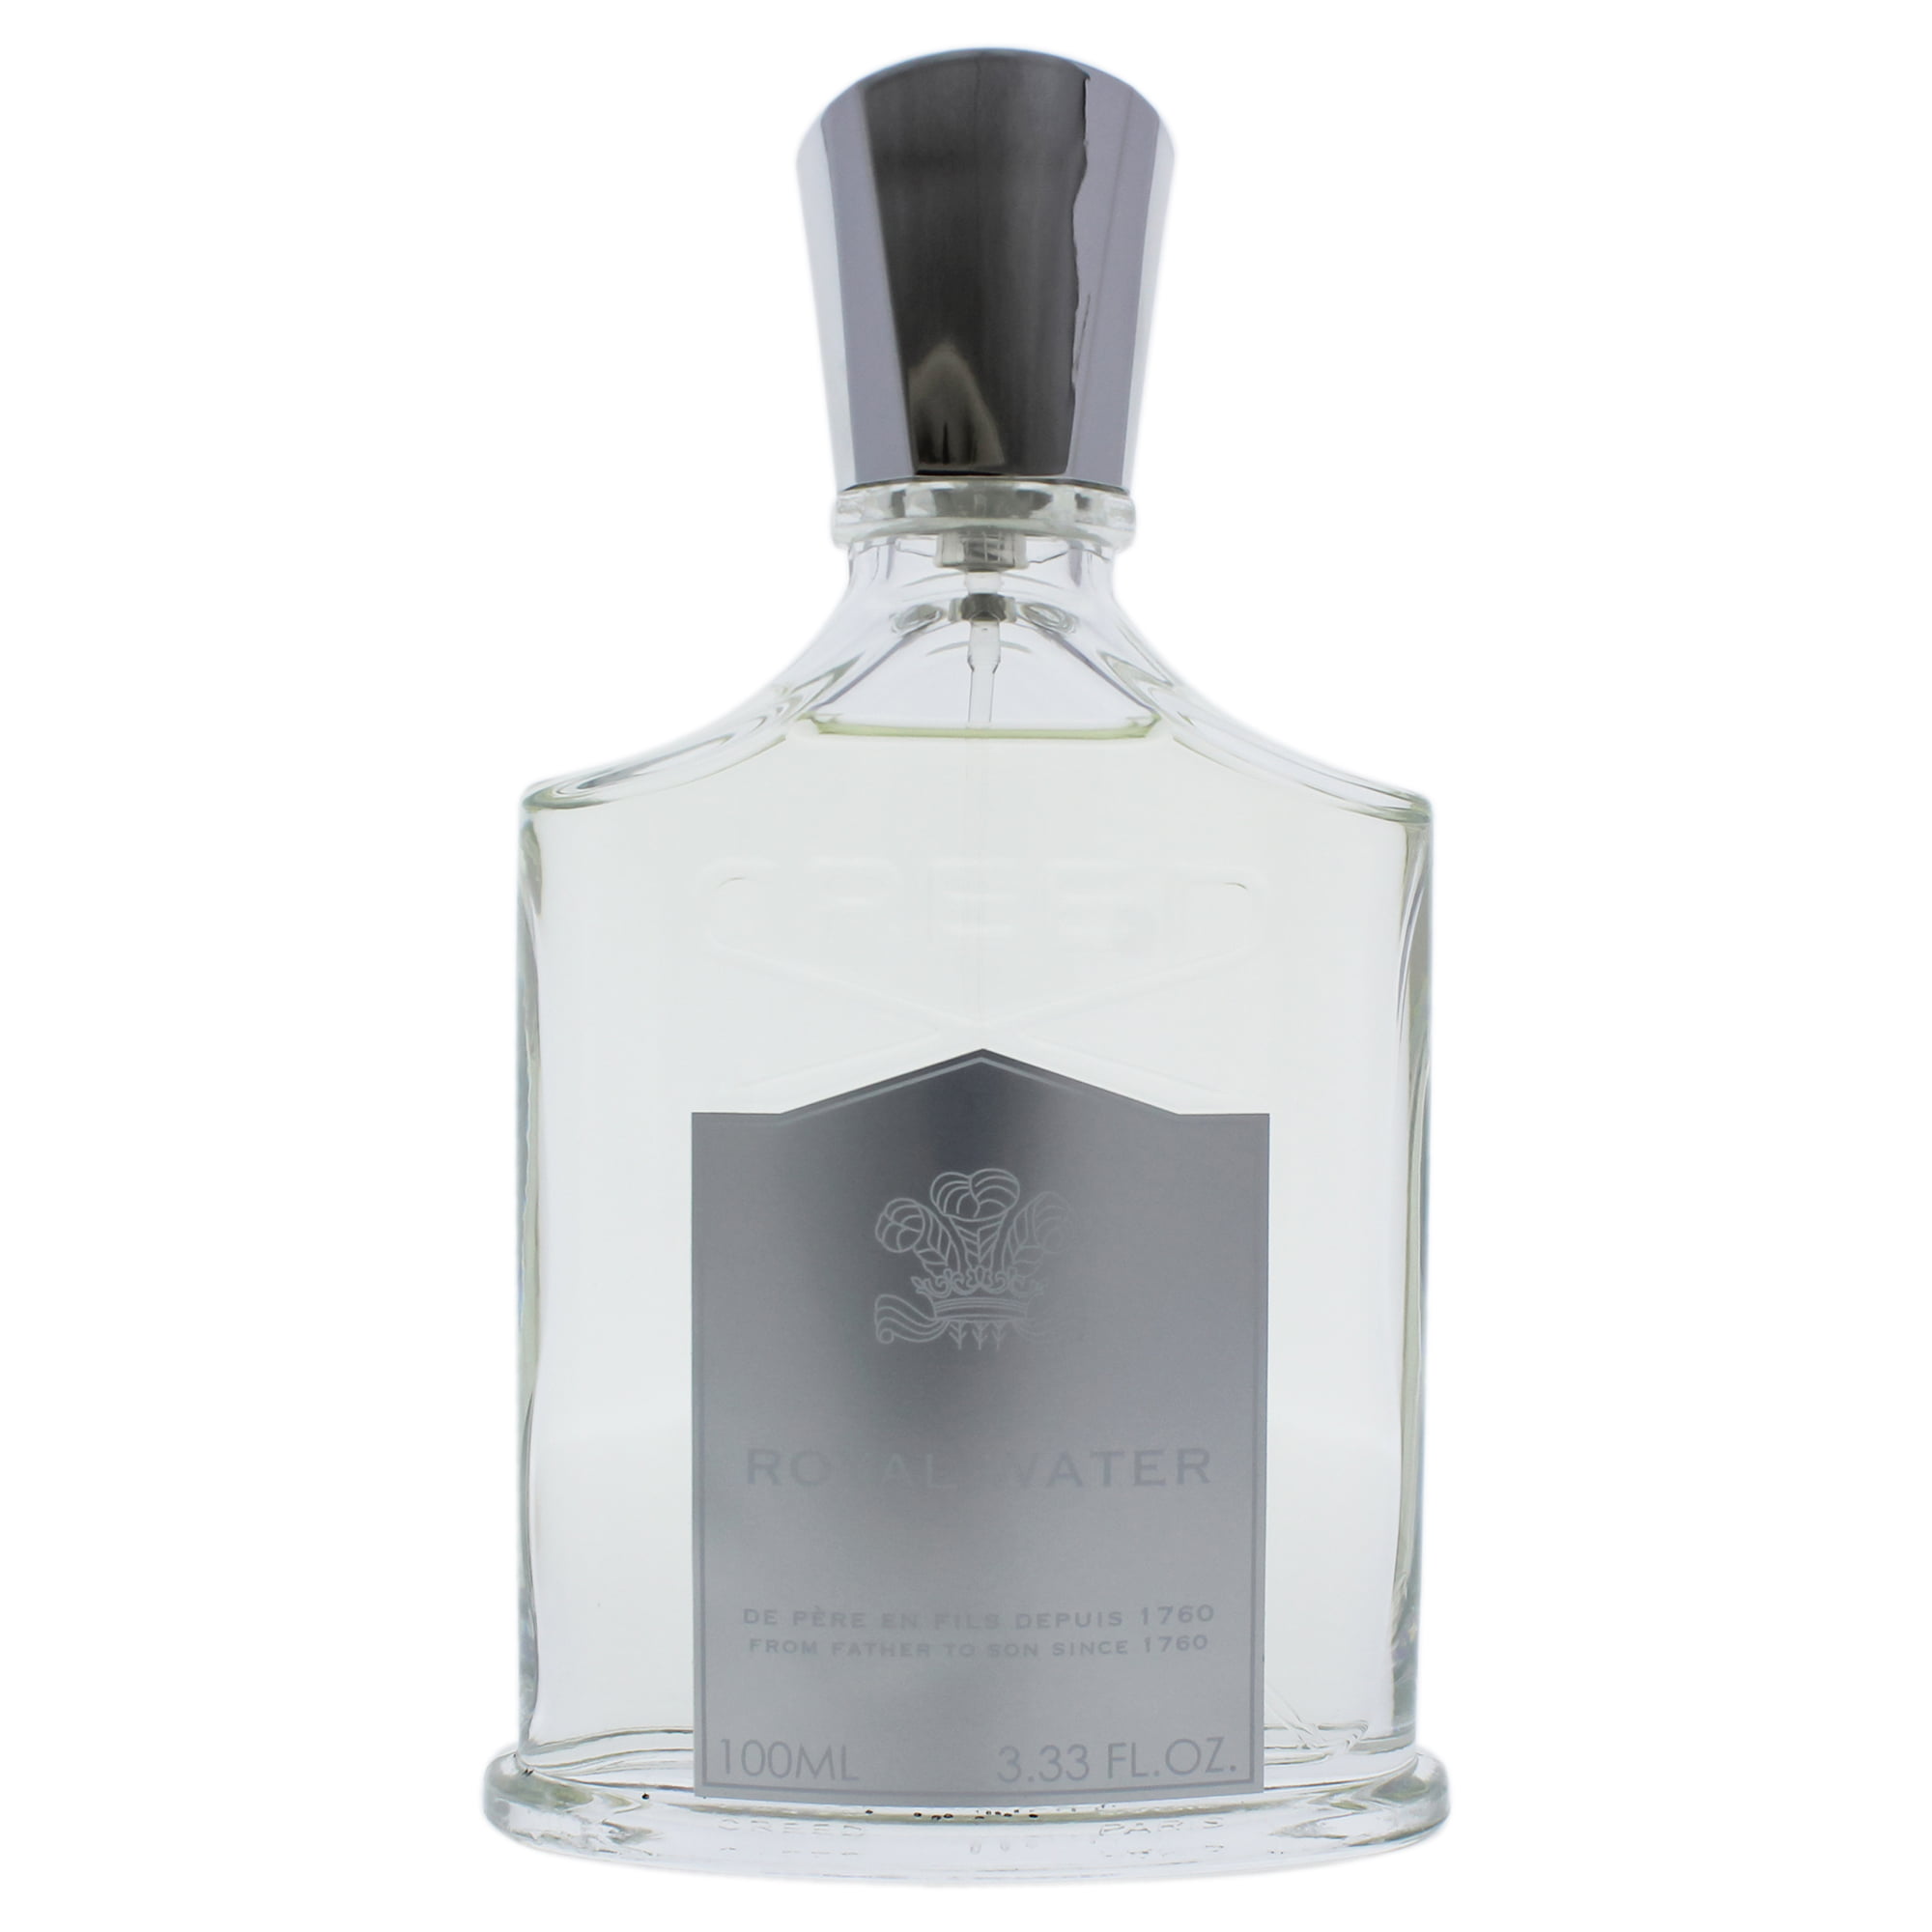 Creed Royal Water Eau de Parfum, Unisex Fragrance, 3.3 Oz